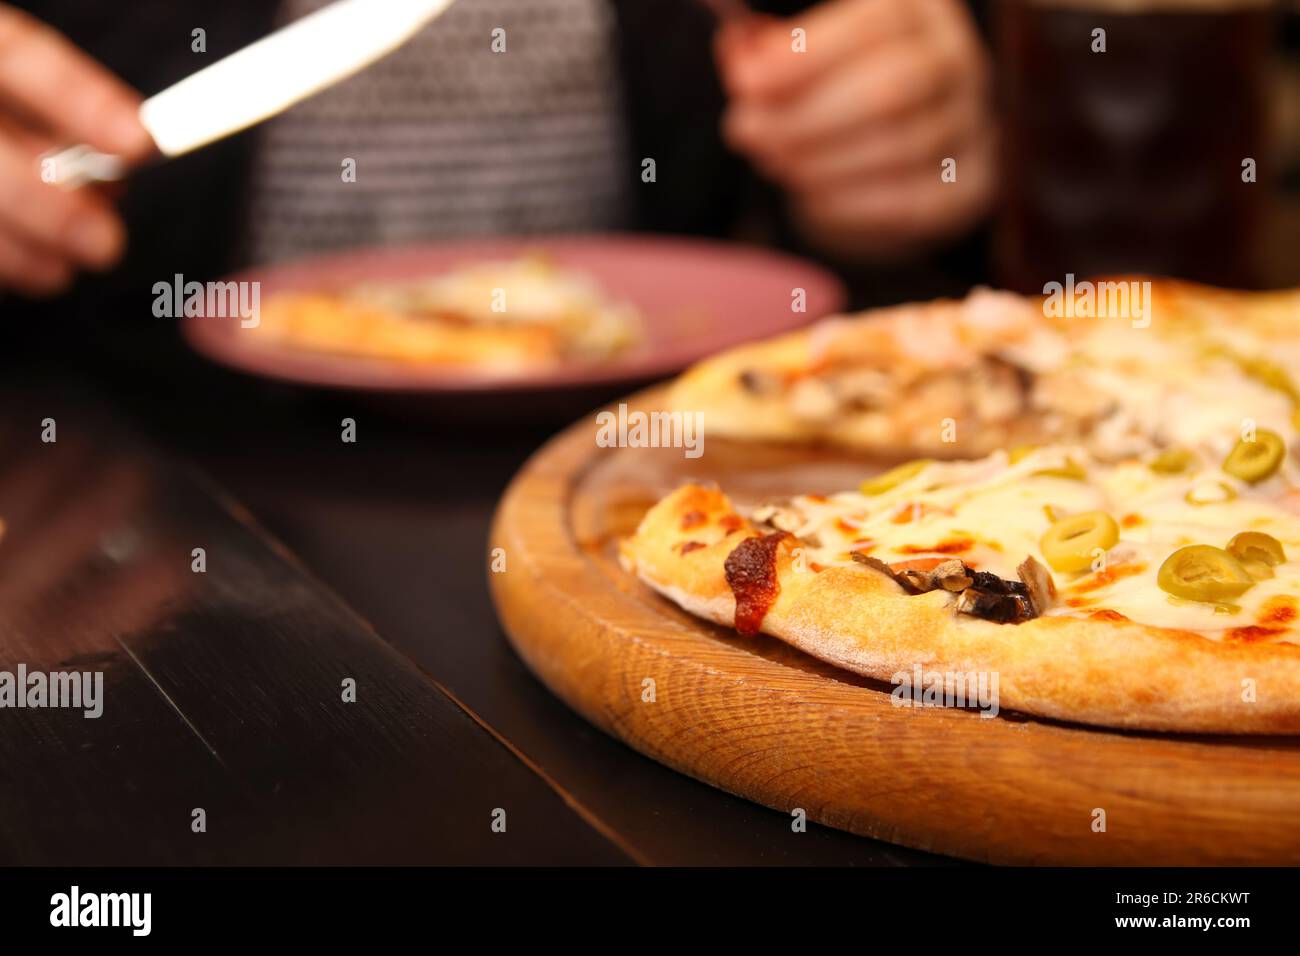 Délicieuse pizza italienne aux olives vertes, fromage Mozzarella fondu et basilic frais sur une table. Gros plan, pizzeria vibes Banque D'Images